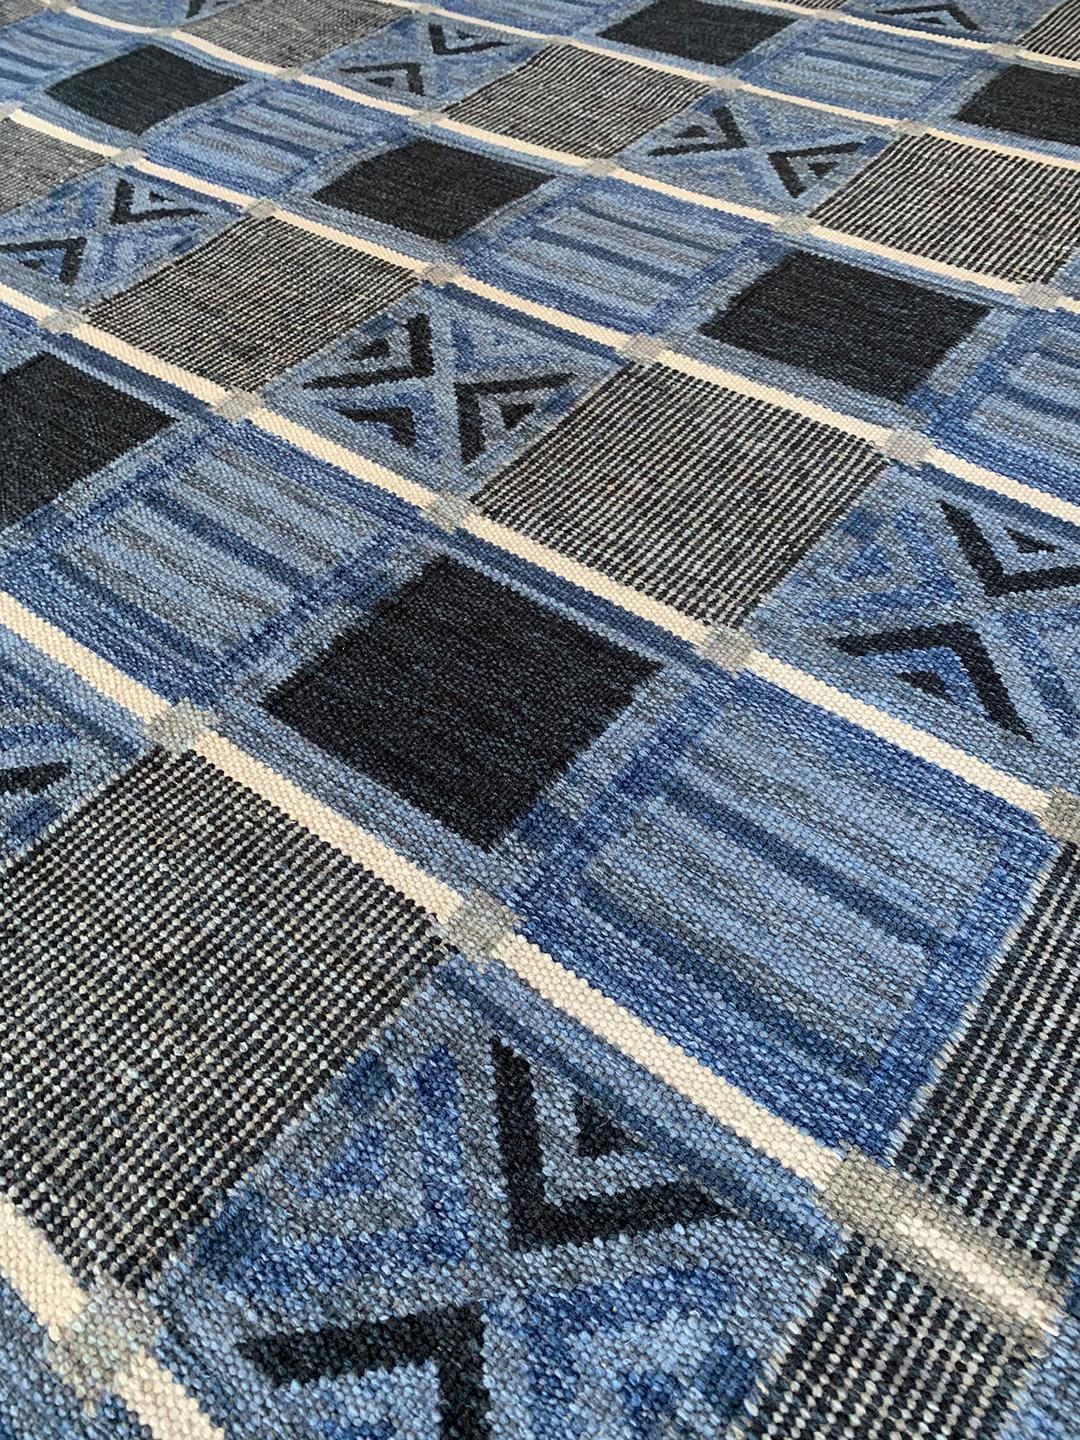 Die schwedische Kollektion ist in erster Linie von alten schwedischen Flachgewebe-Teppichen inspiriert, deren geometrische Muster auch im 21. Jahrhundert noch aktuell sind. In der Kollektion werden verschiedene Flachgewebetechniken verwendet, die